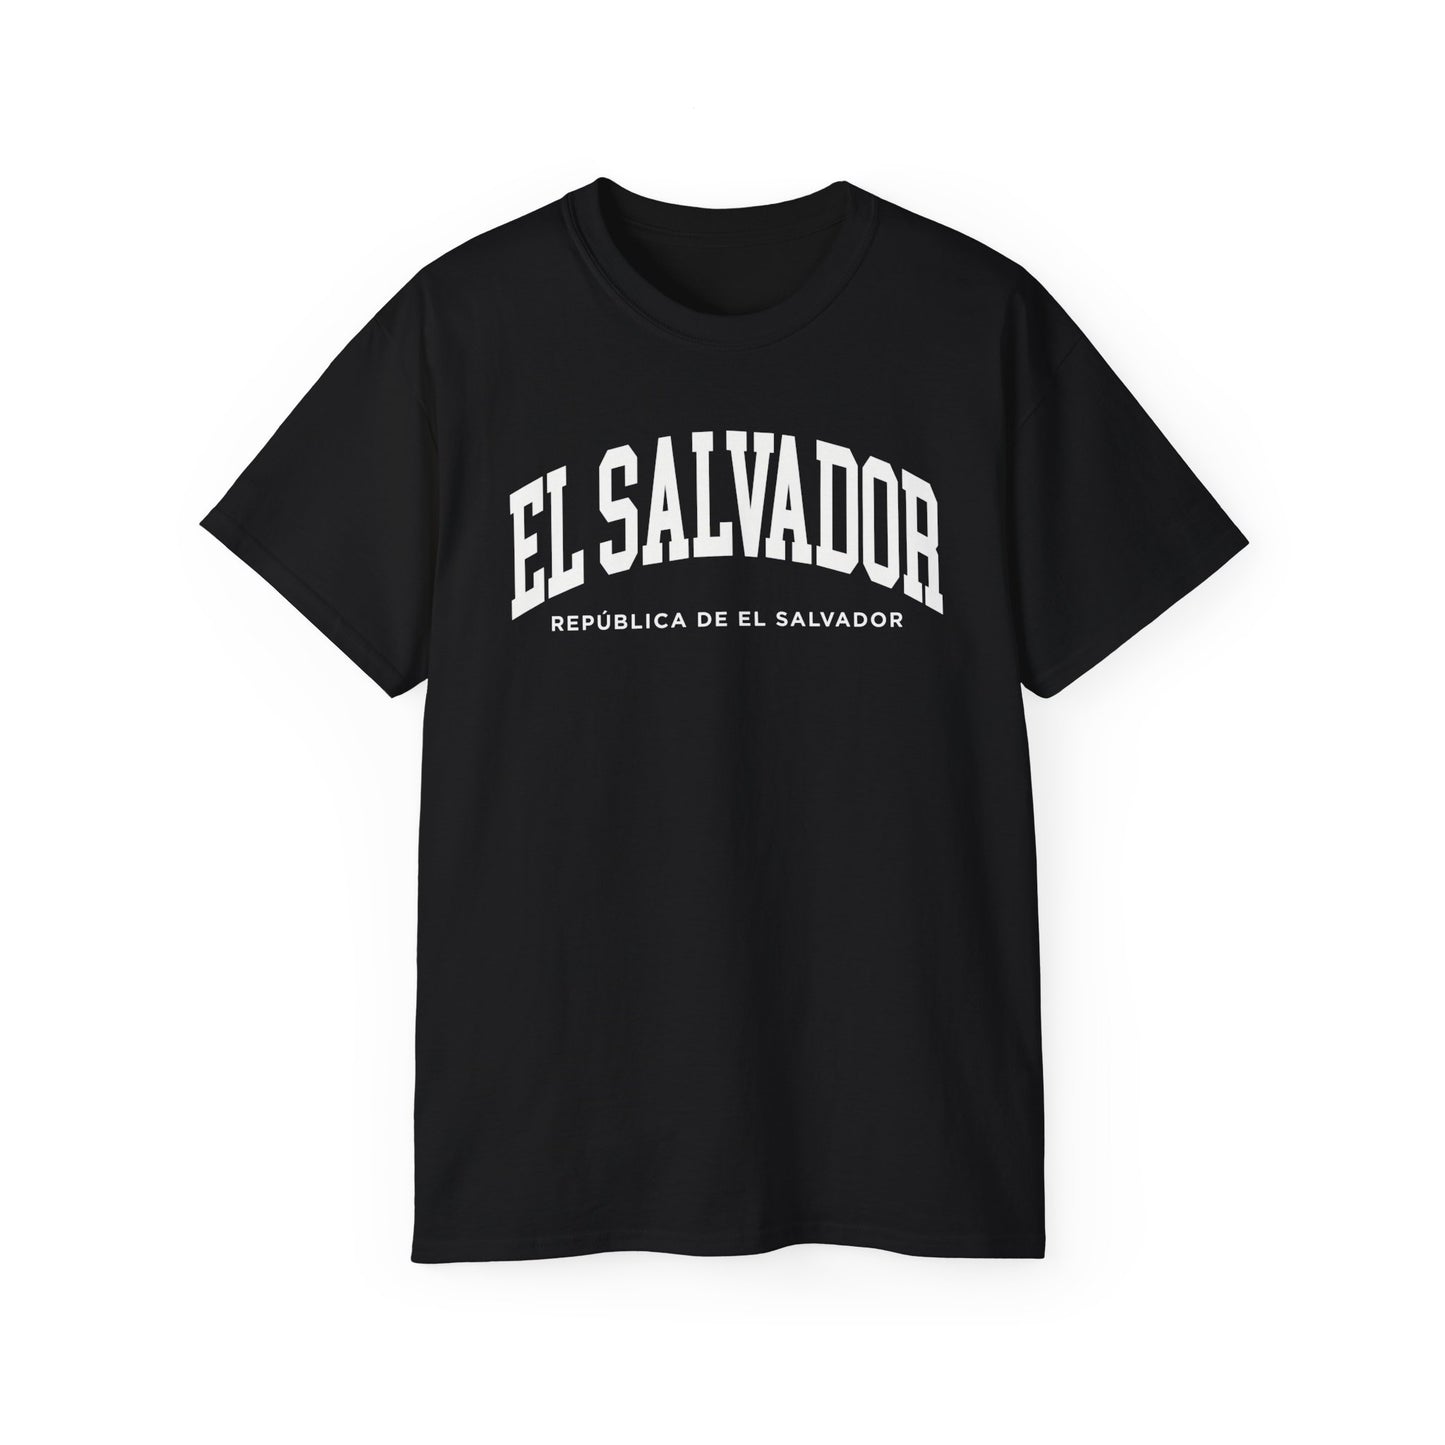 El Salvador Tee